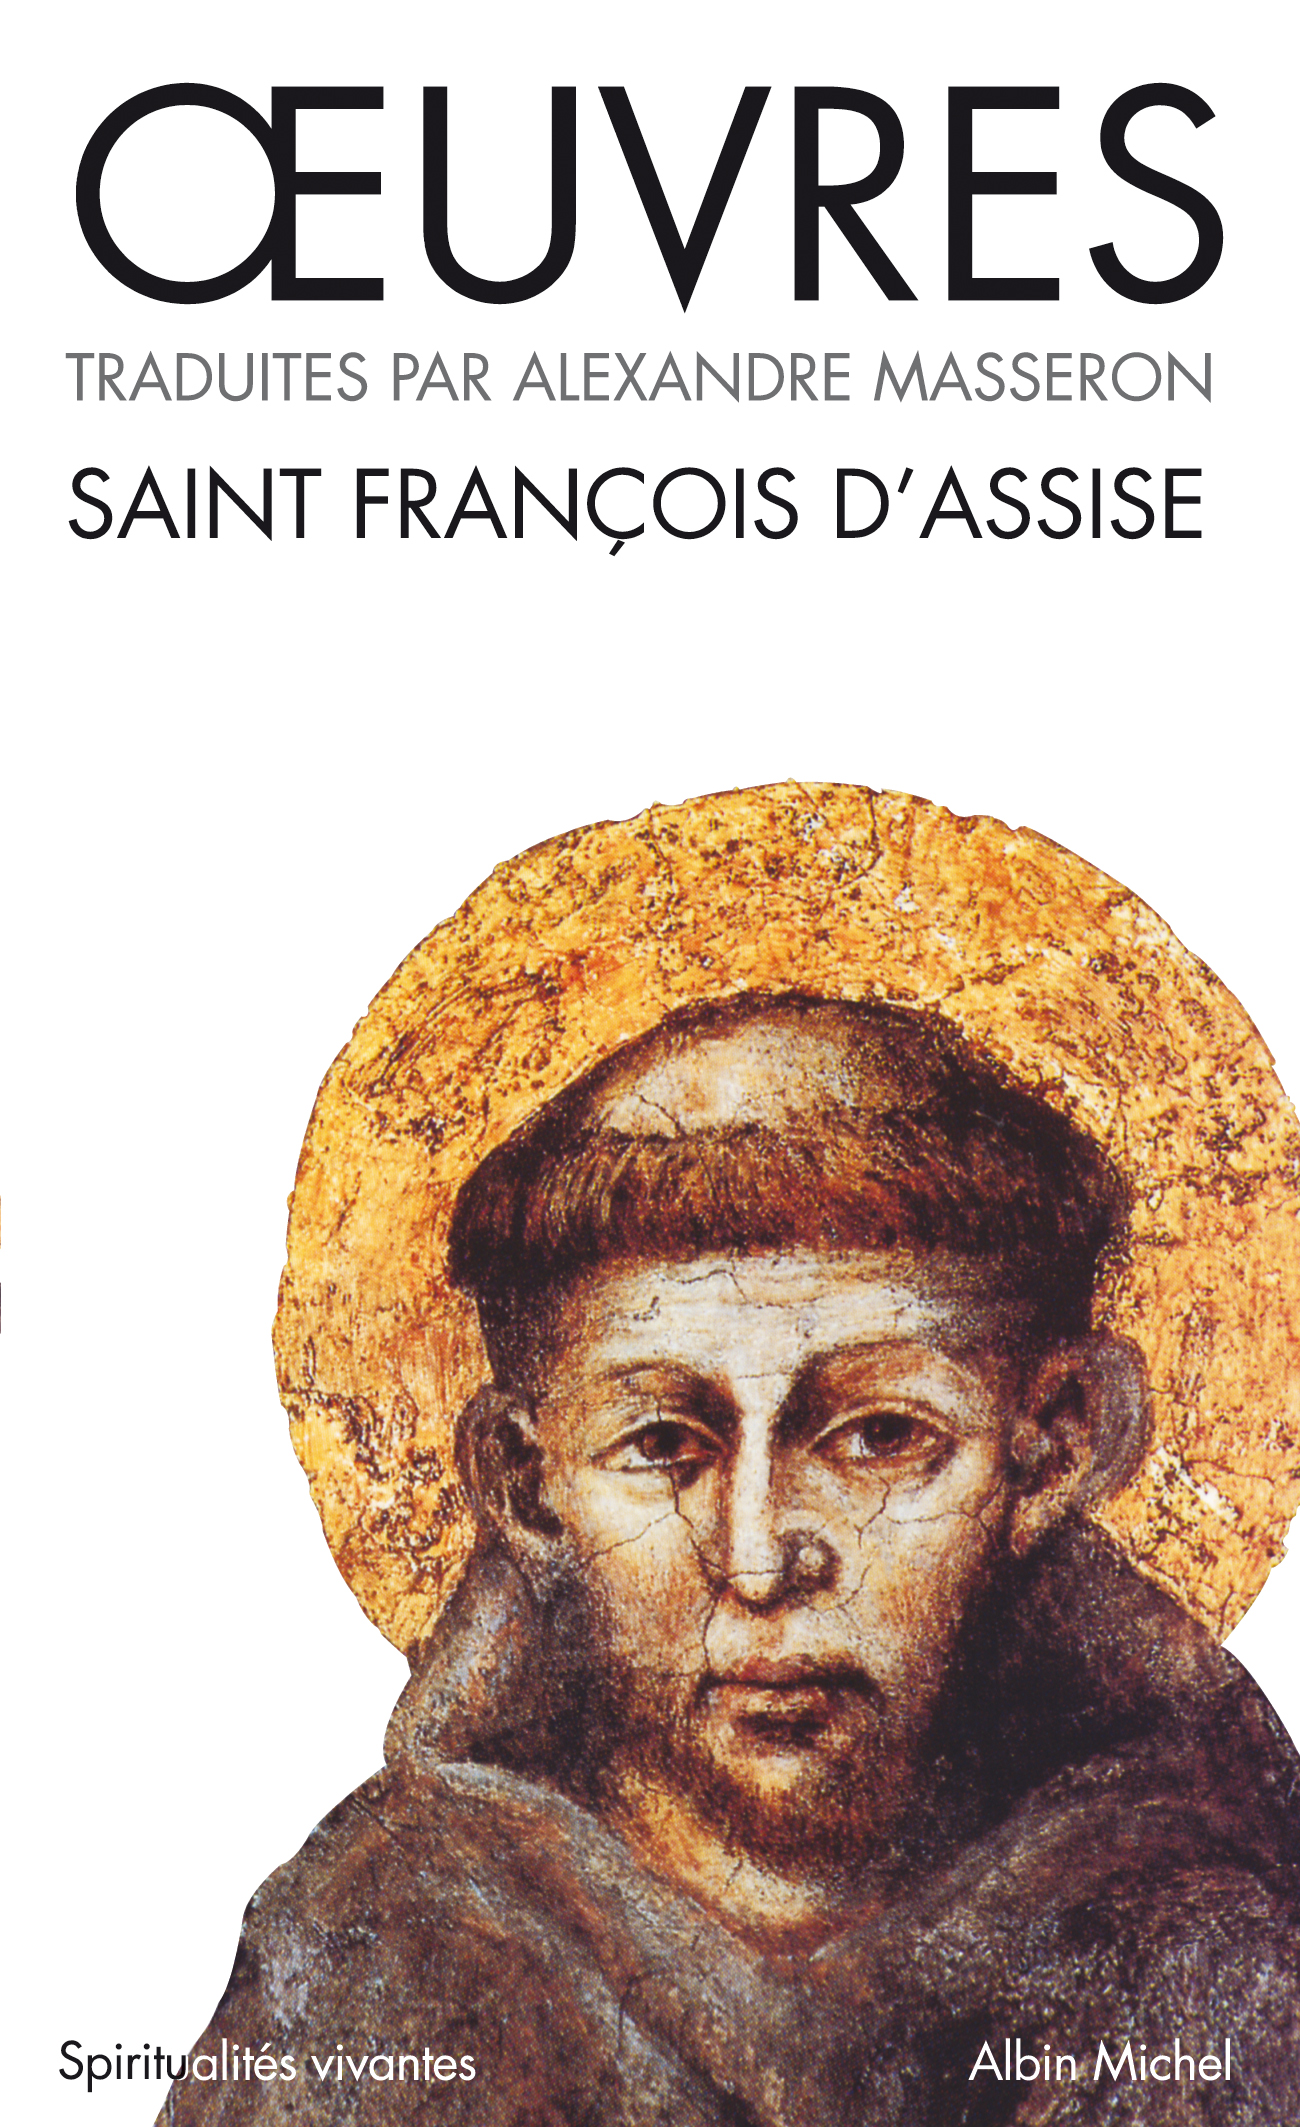 Couverture du livre Oeuvres de Saint-François d'Assise